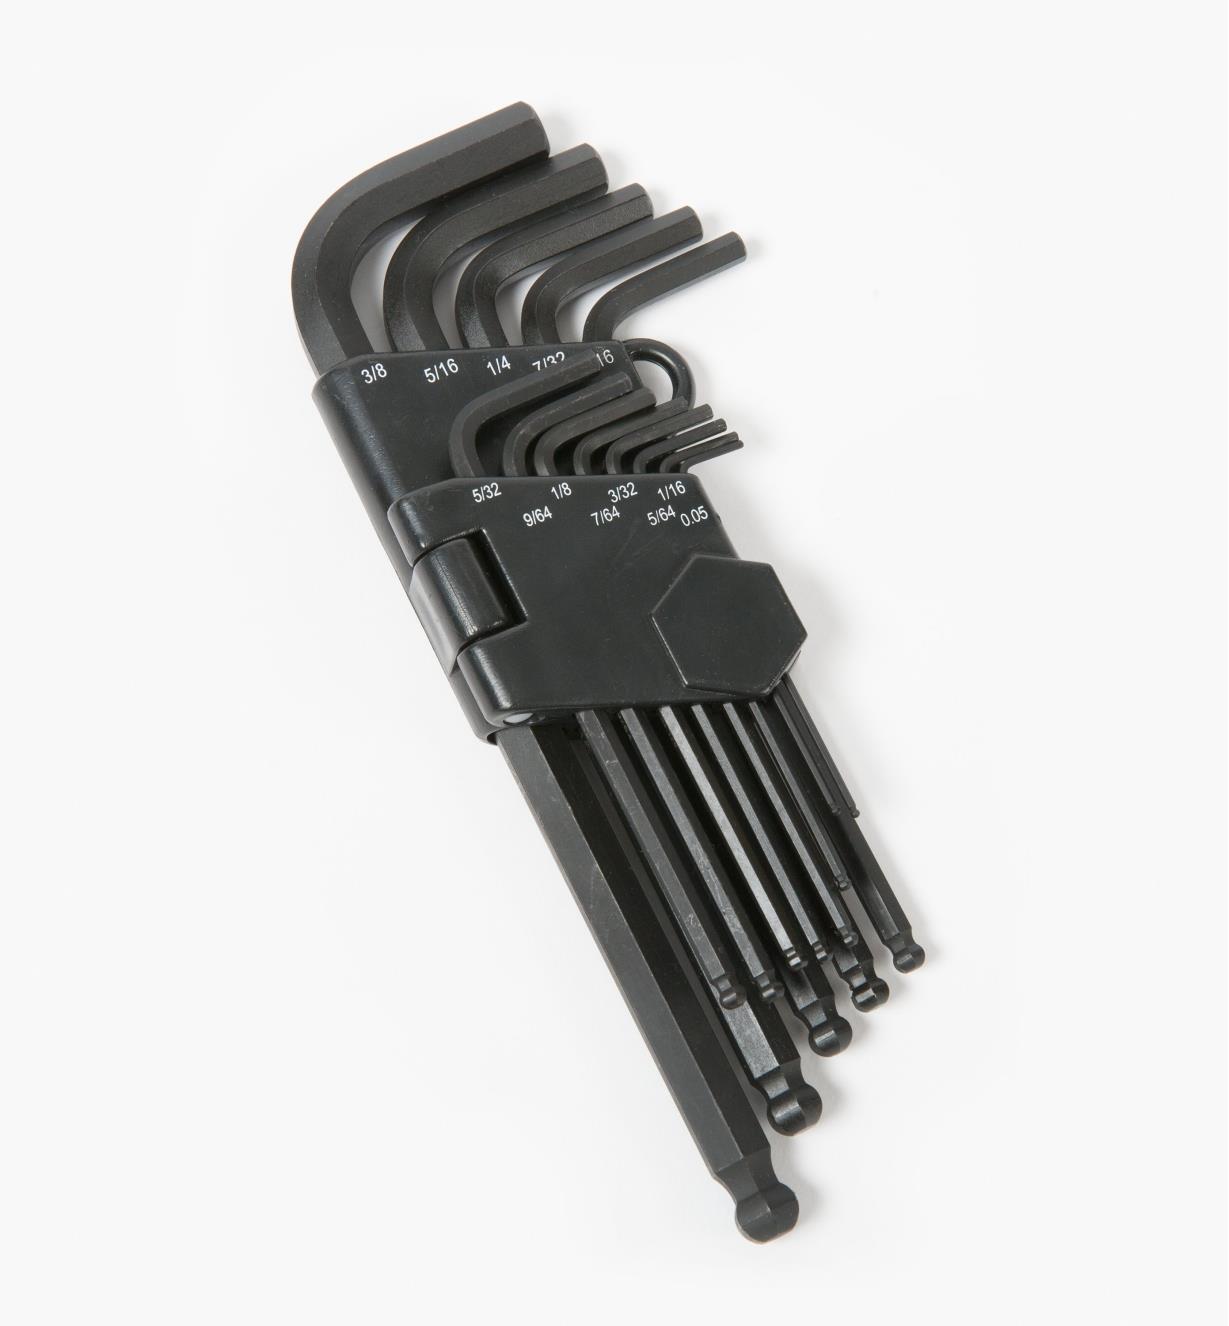 Allen Key Hex Key LONG IMPERIAL 7/32 inch Hexagonal Wrench Key Keys 911-LI 